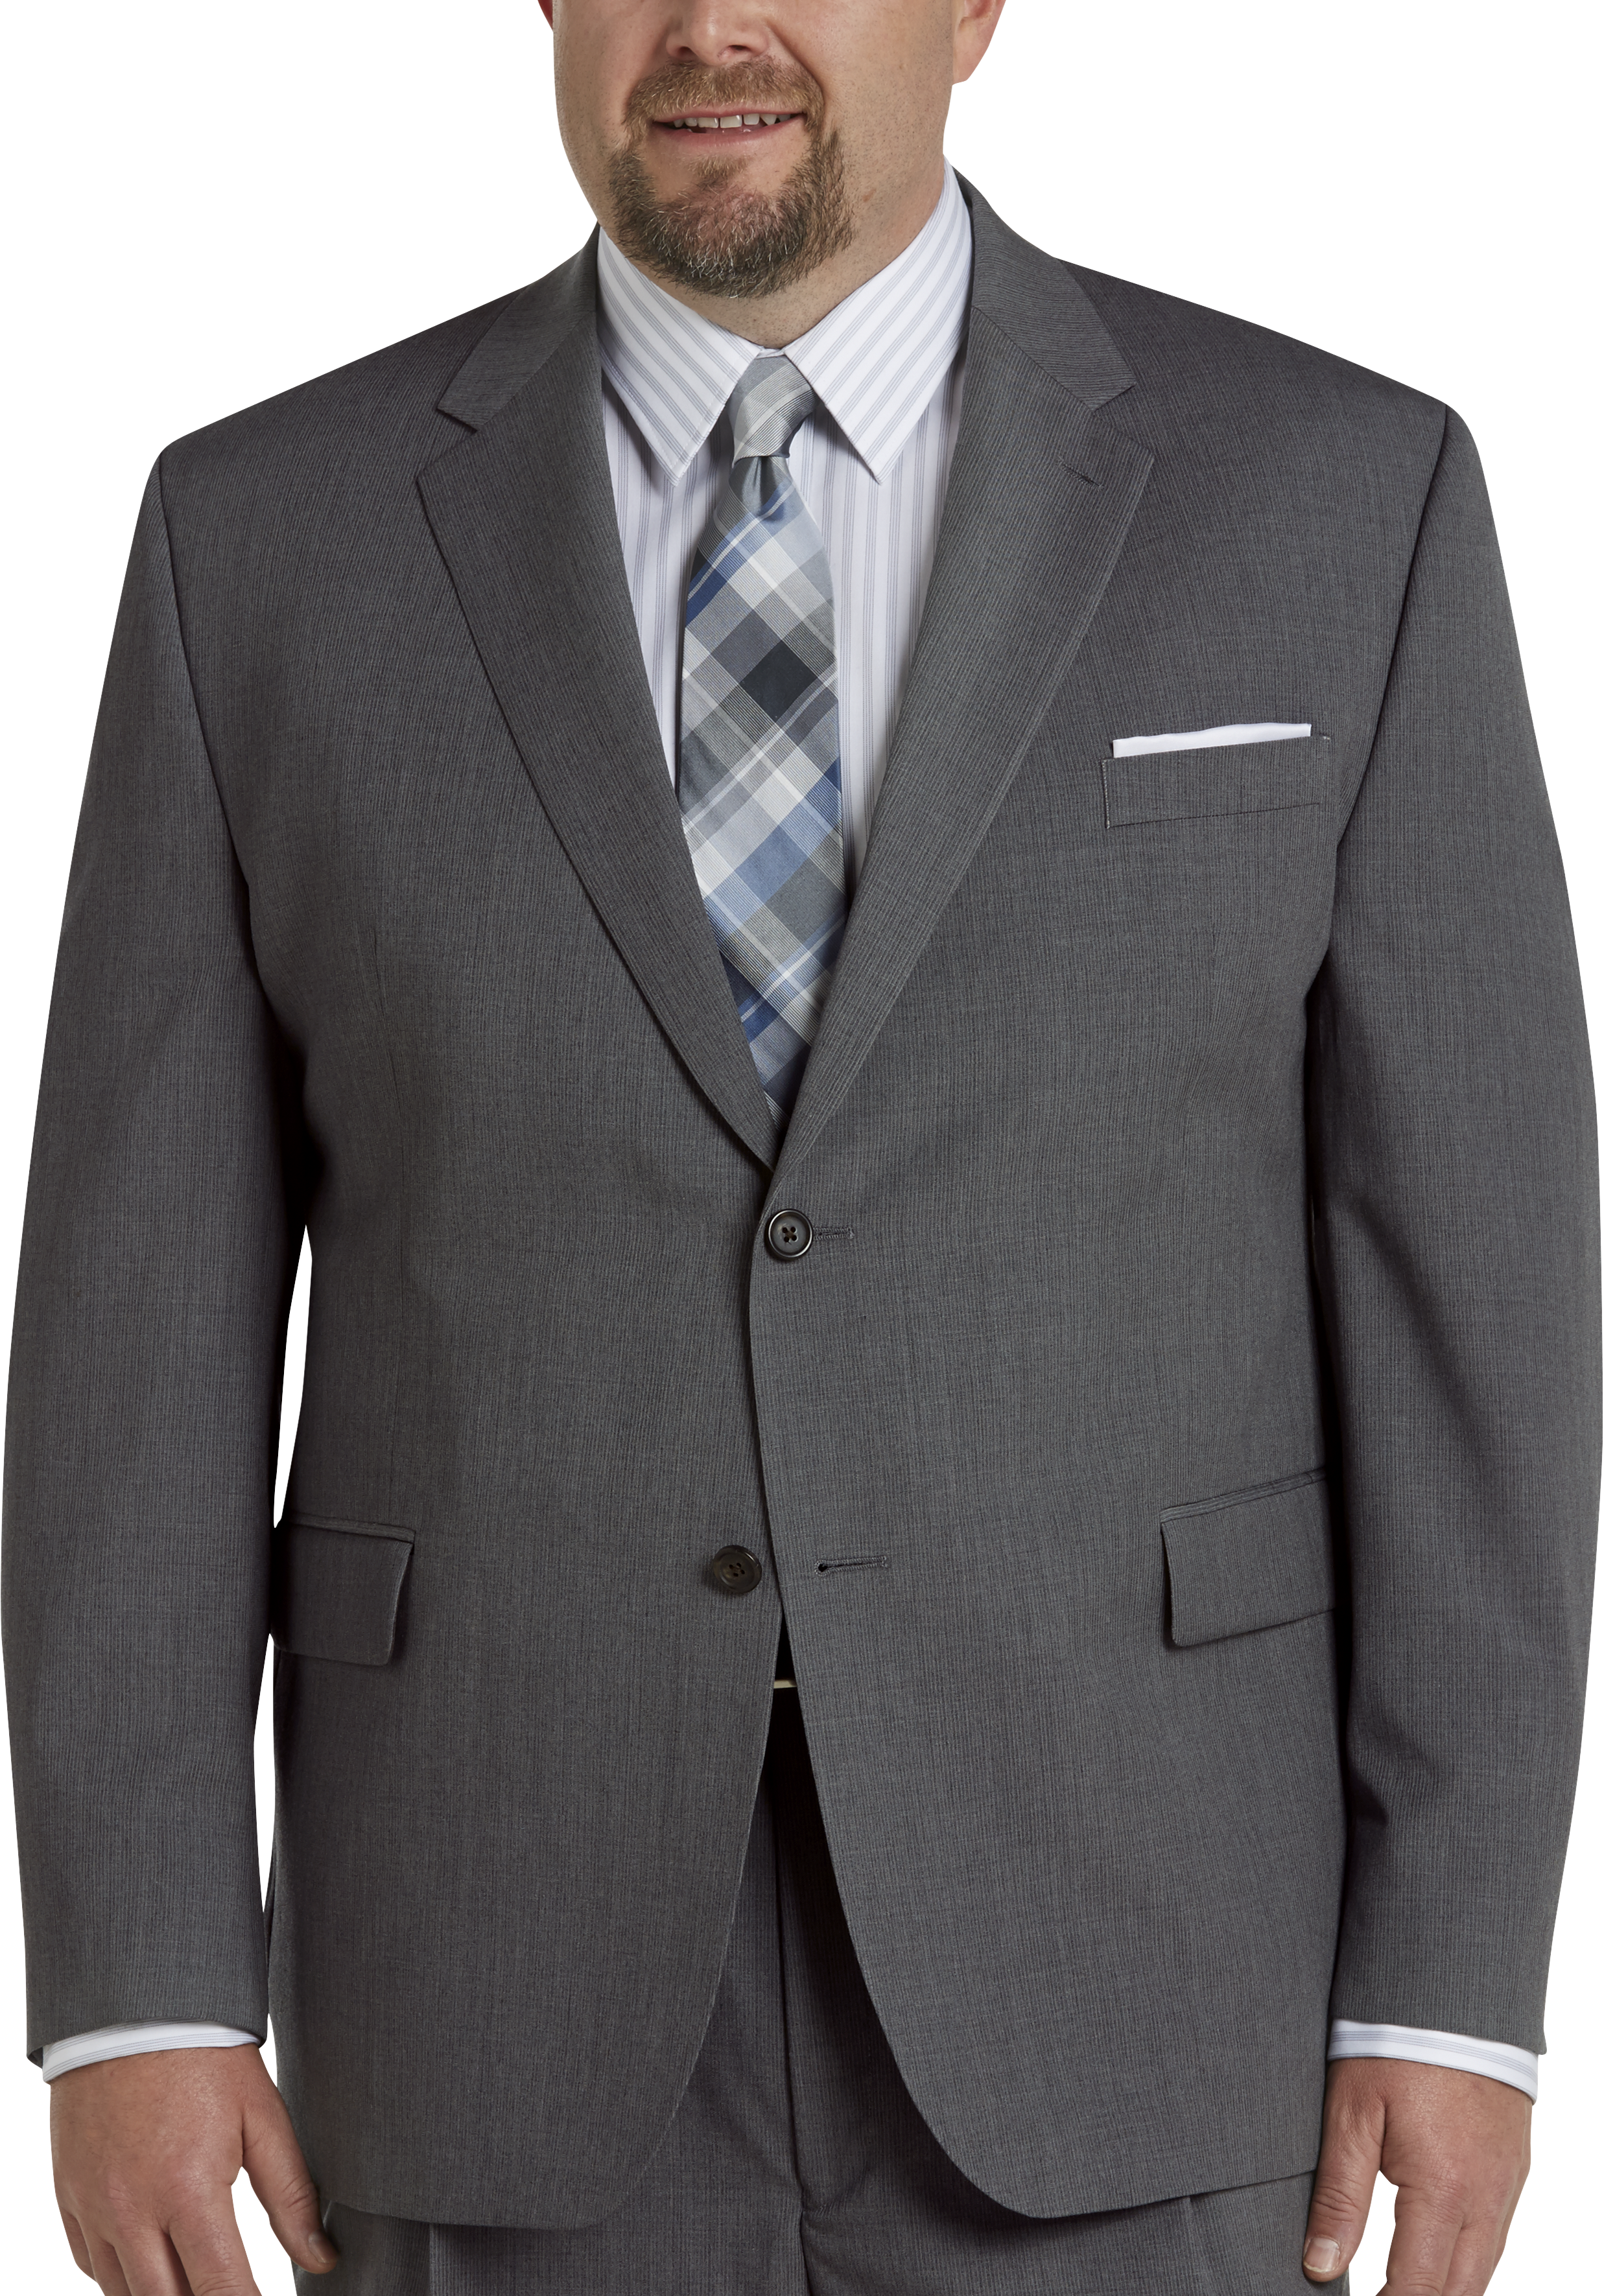 Men's Gray Suit | Men's Wearhouse